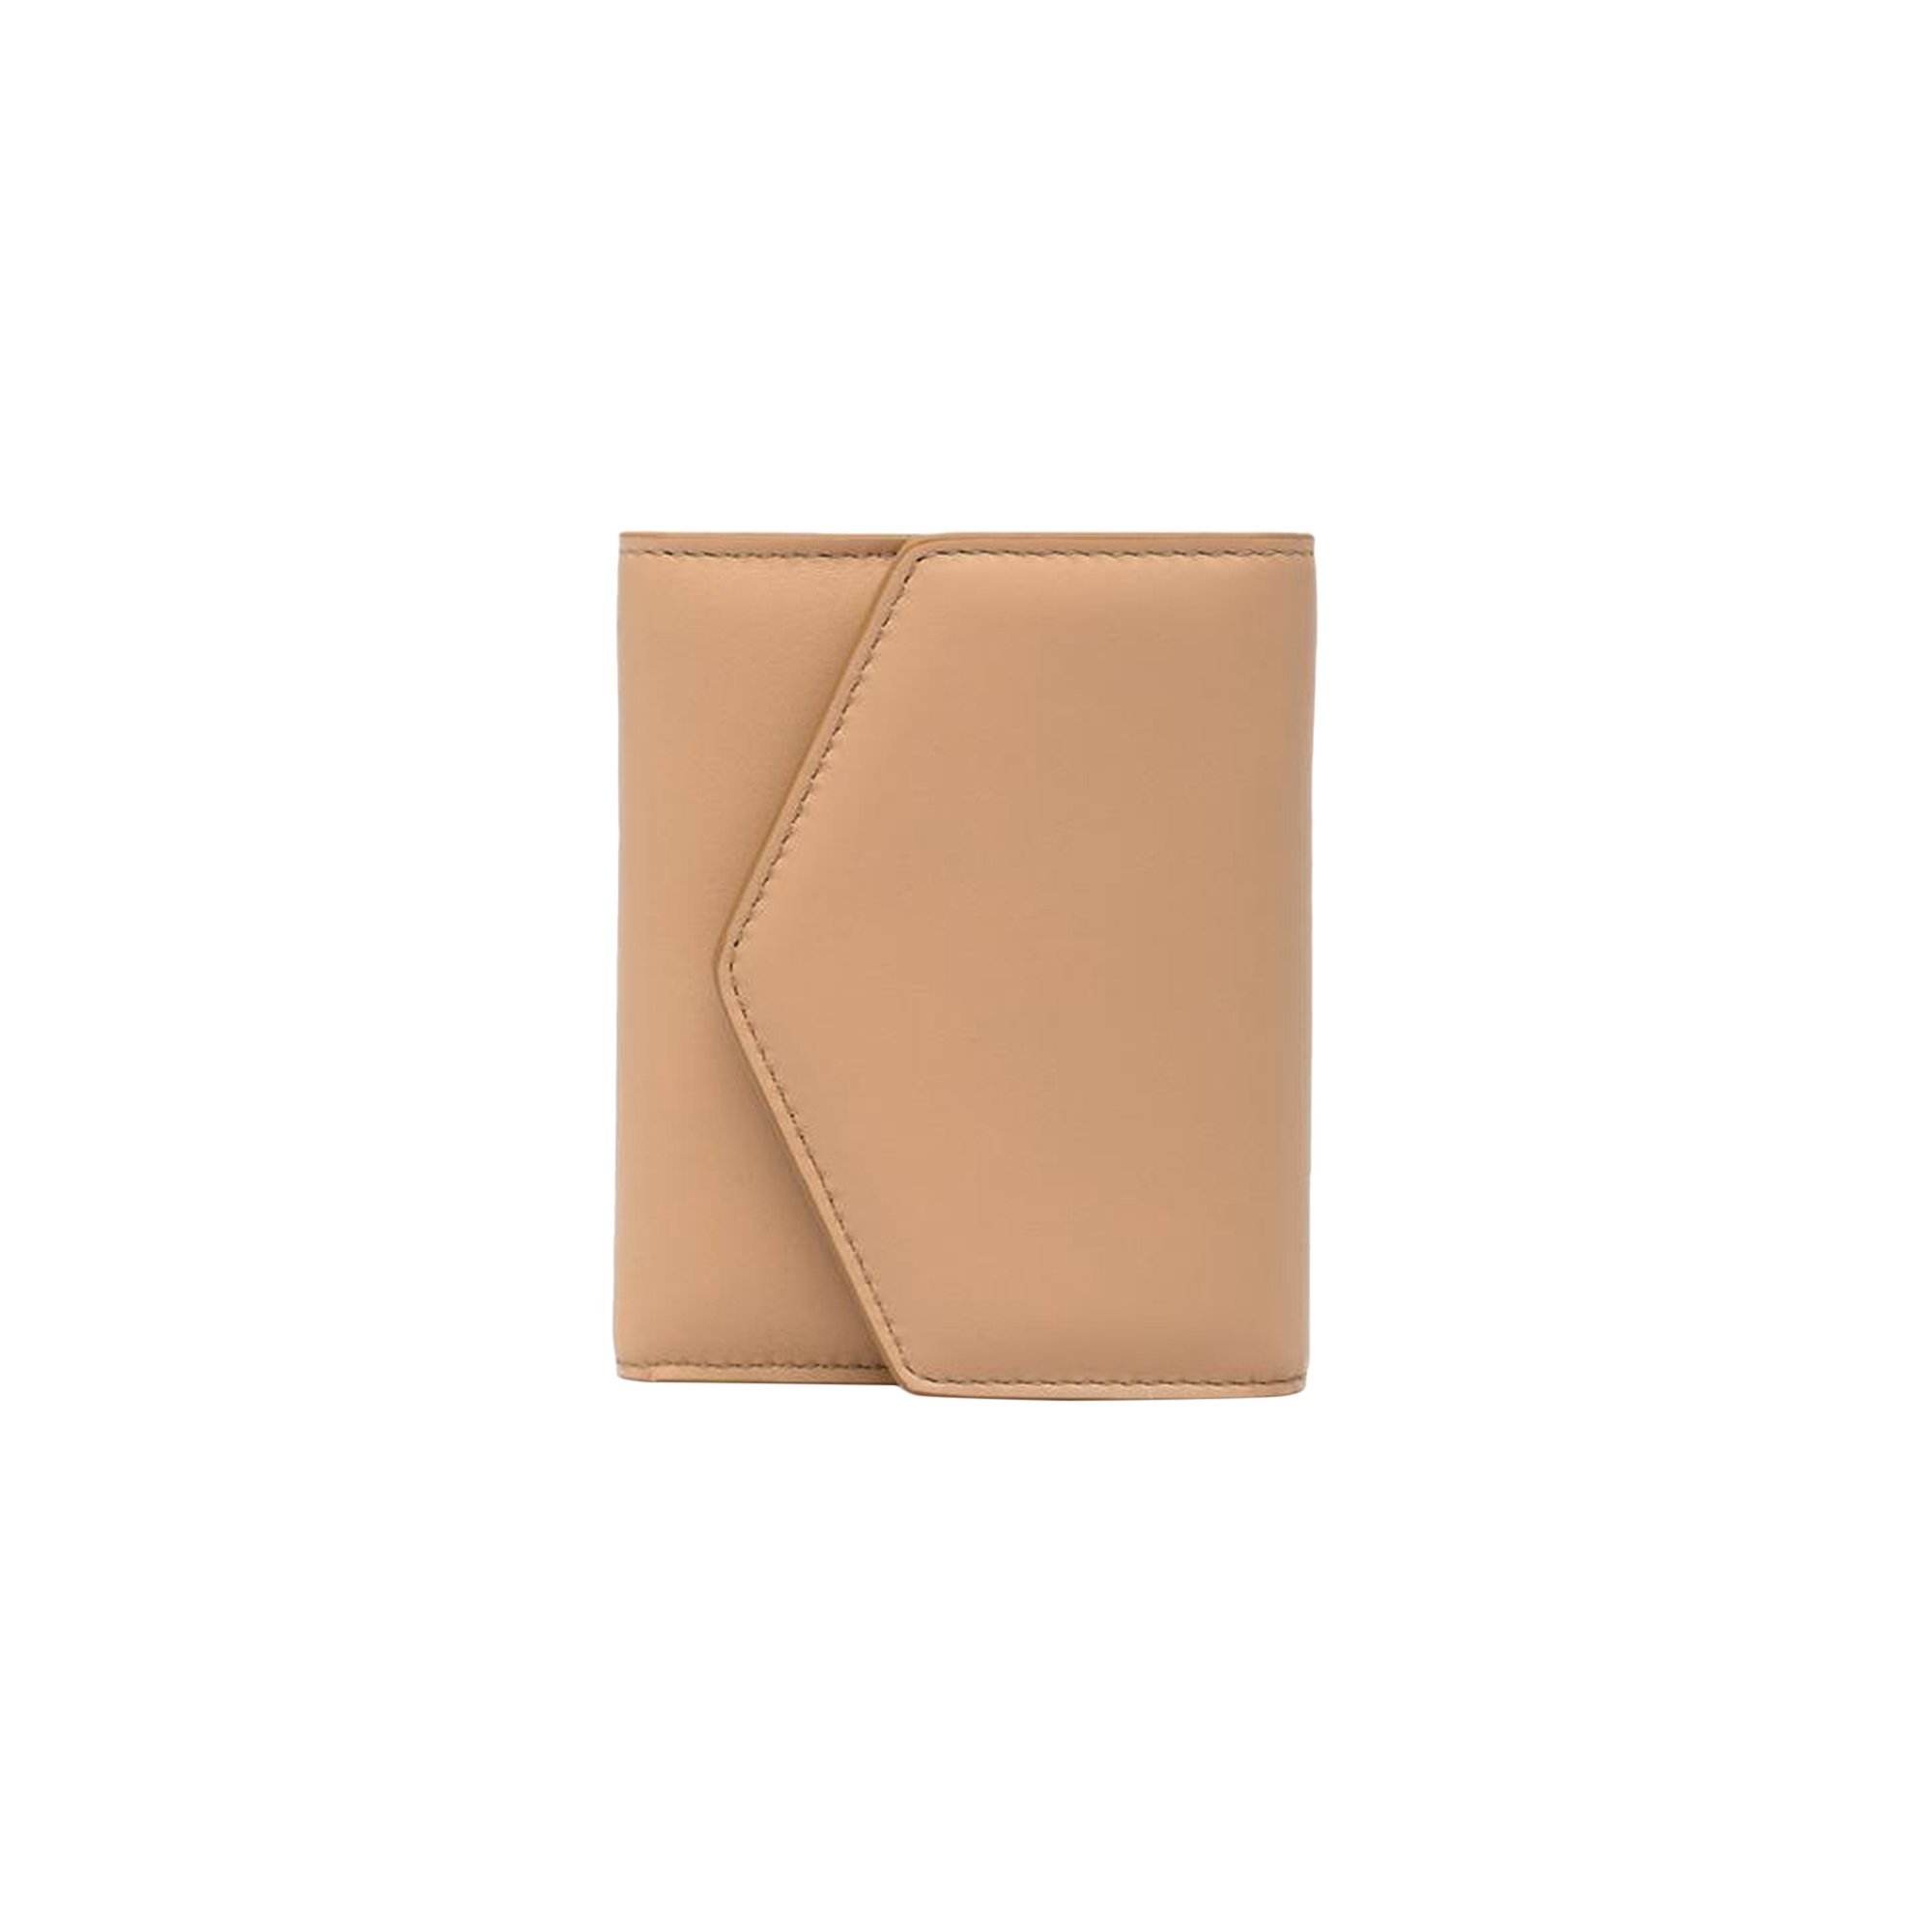 Buy Maison Margiela Envelope Wallet 'Nude' - S56UI0136 P4303 T2057